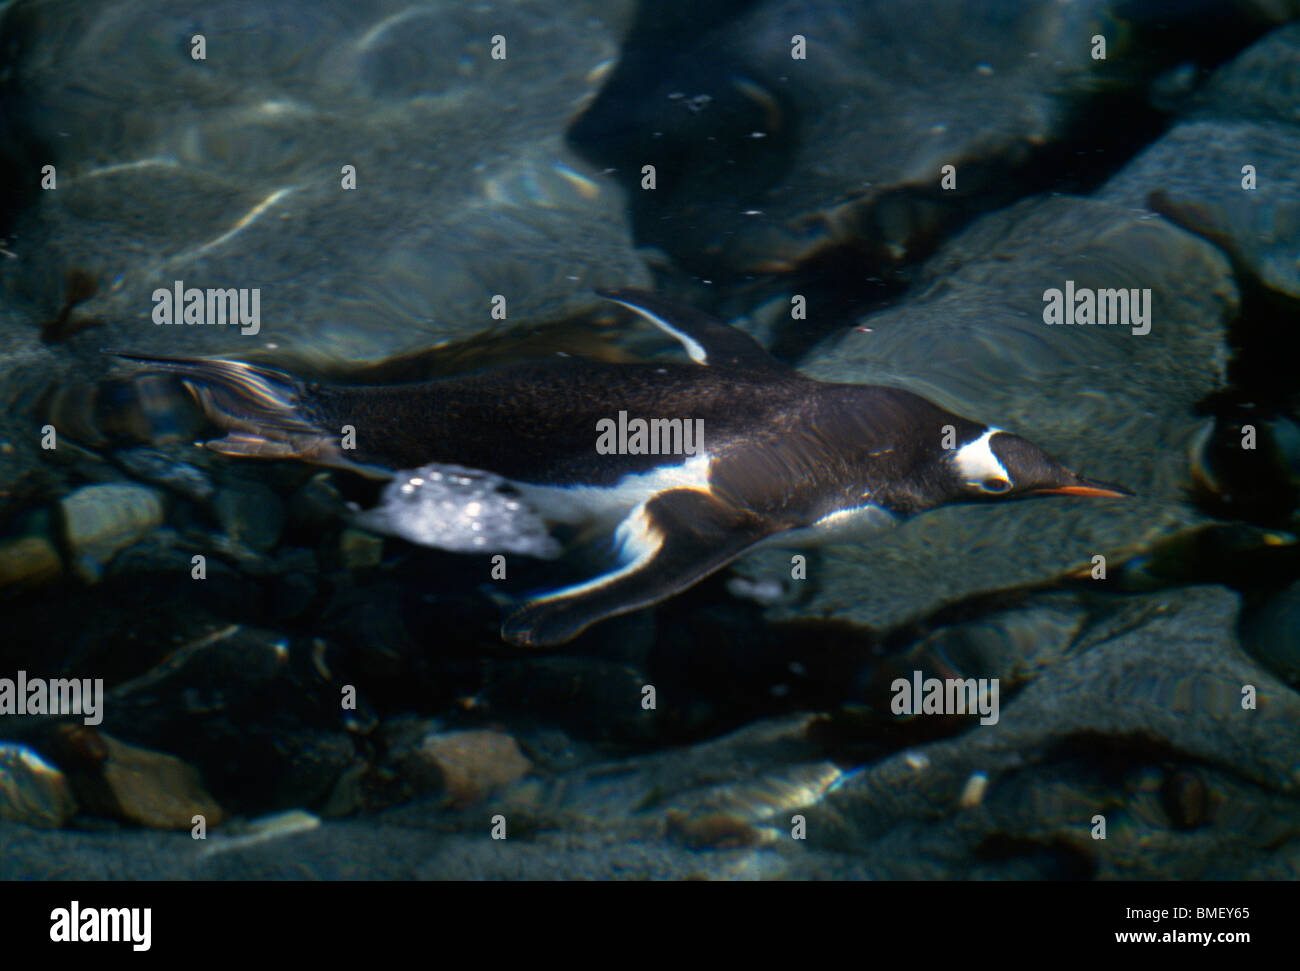 Gentoo penguin swimming underwater, Wiencke Island, Antarctica Stock Photo